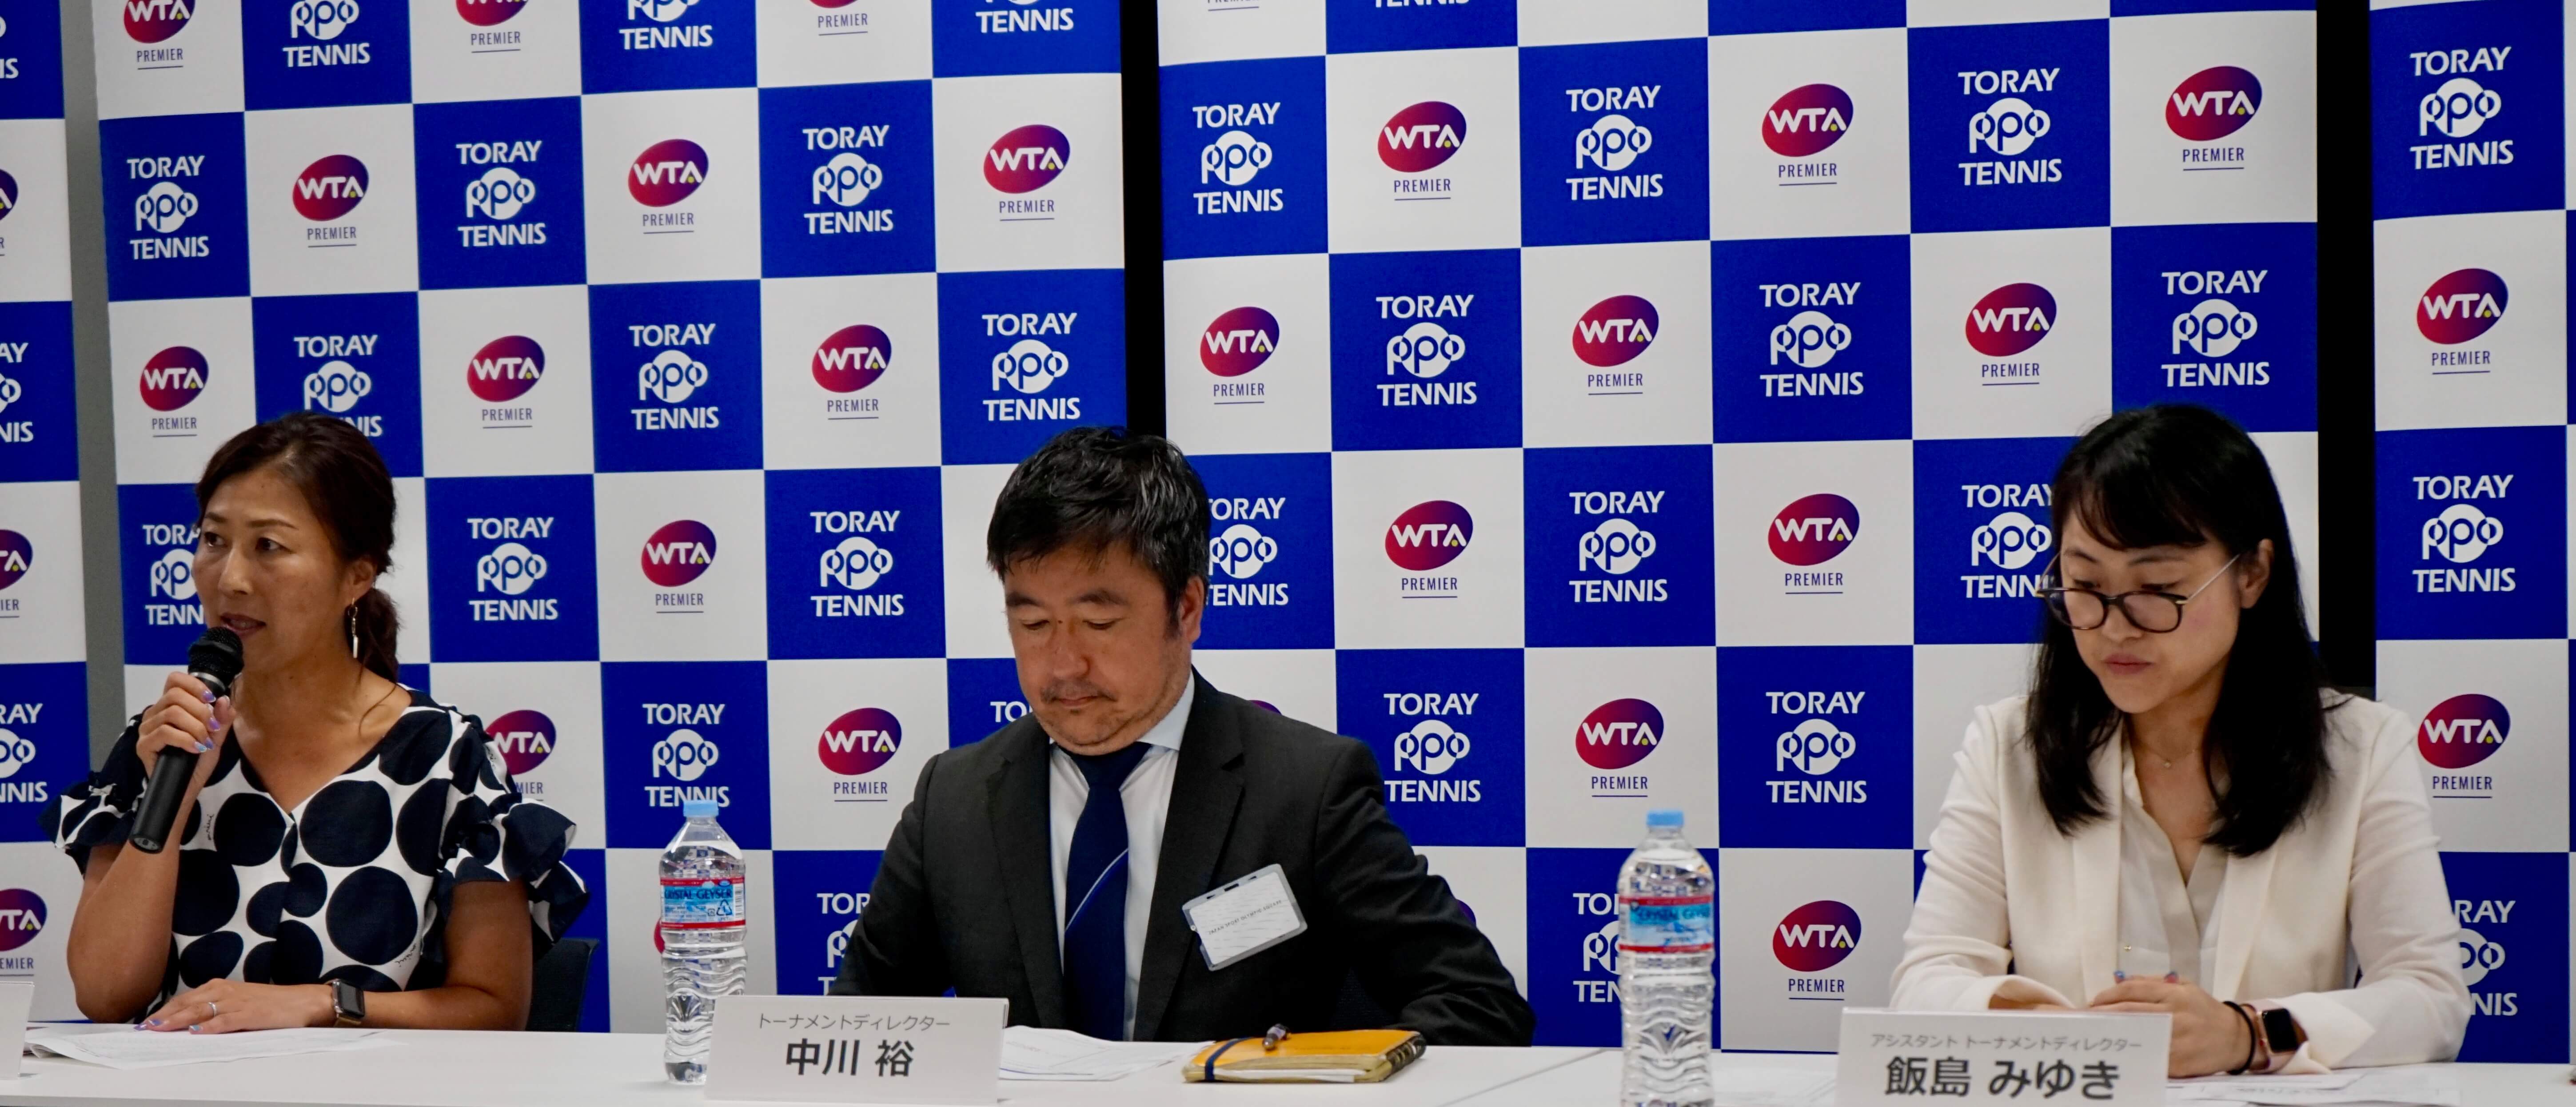 左から沢松奈生子トーナメントアンバサダー、中川裕トーナメントディレクター、 飯島みゆきアシスタントトーナメントディレクター